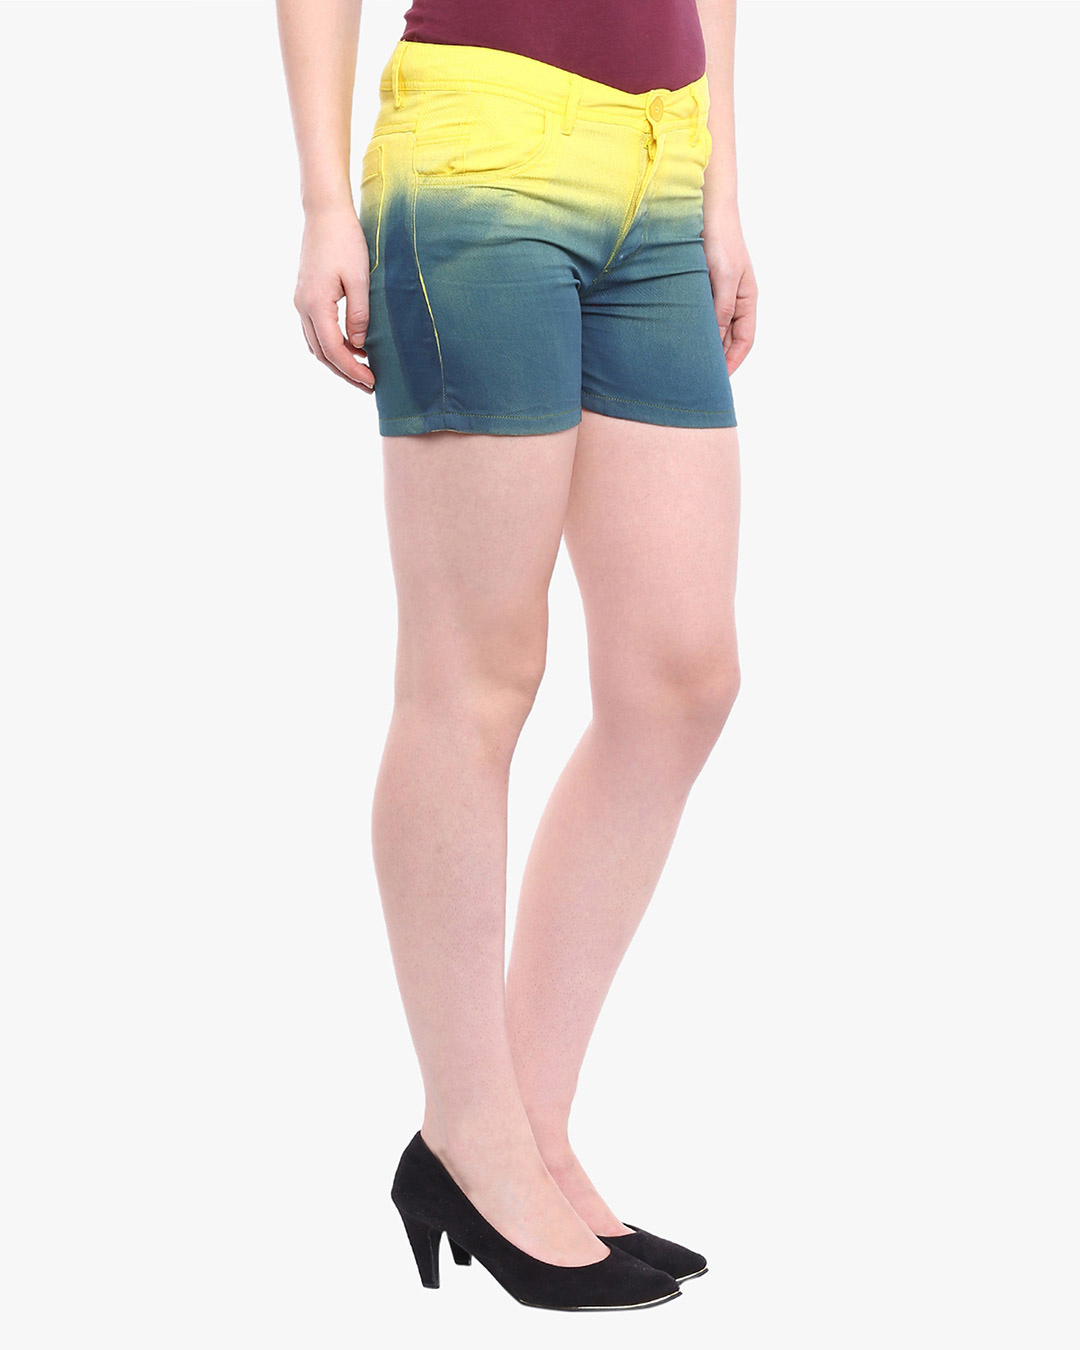 Shop Women's Stylish Shorts-Back